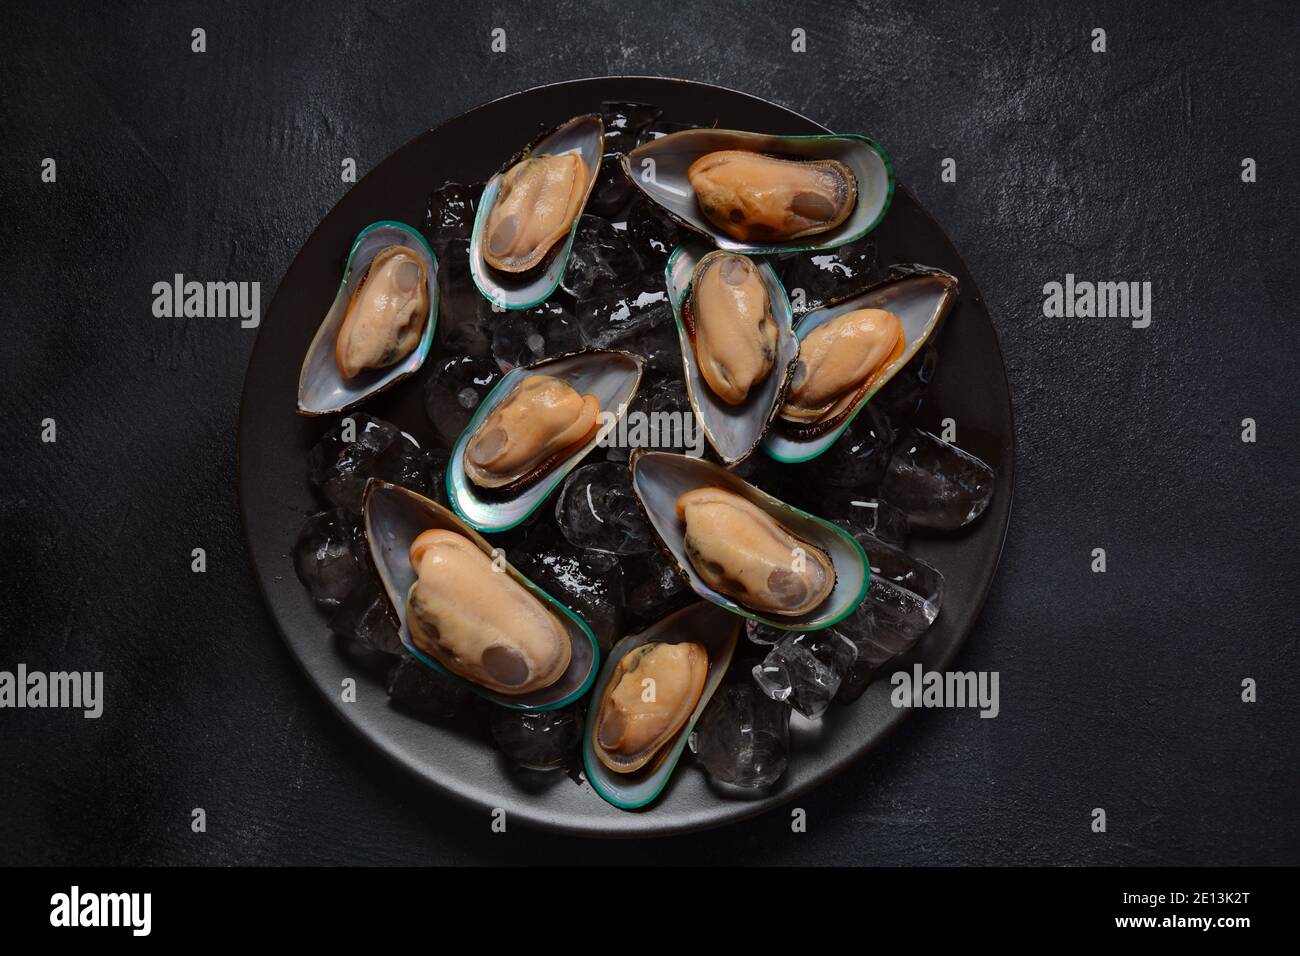 Mariscos mejillones crudos en un plato sobre cubitos de hielo Foto de stock